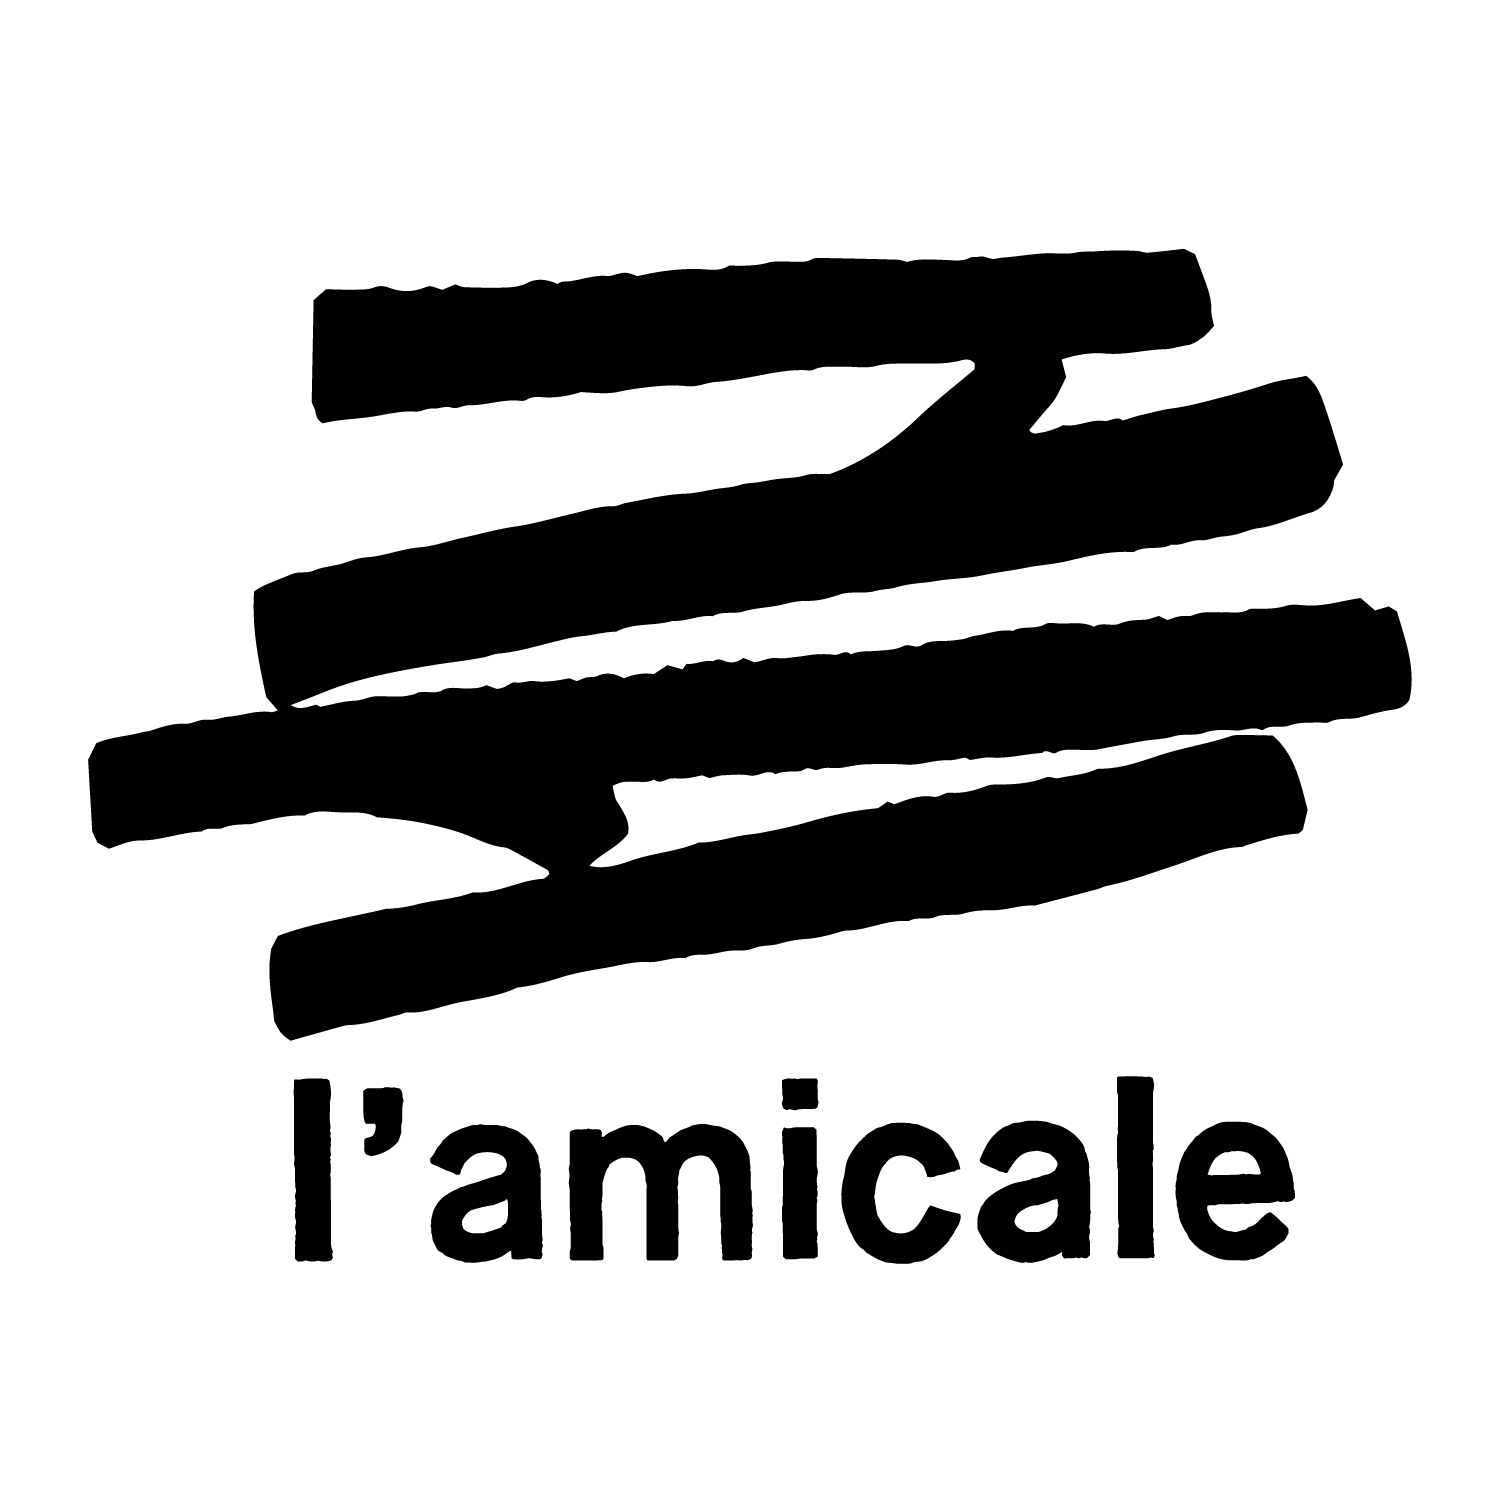 Le logo de l'Amicale, une sorte de tas de bûche